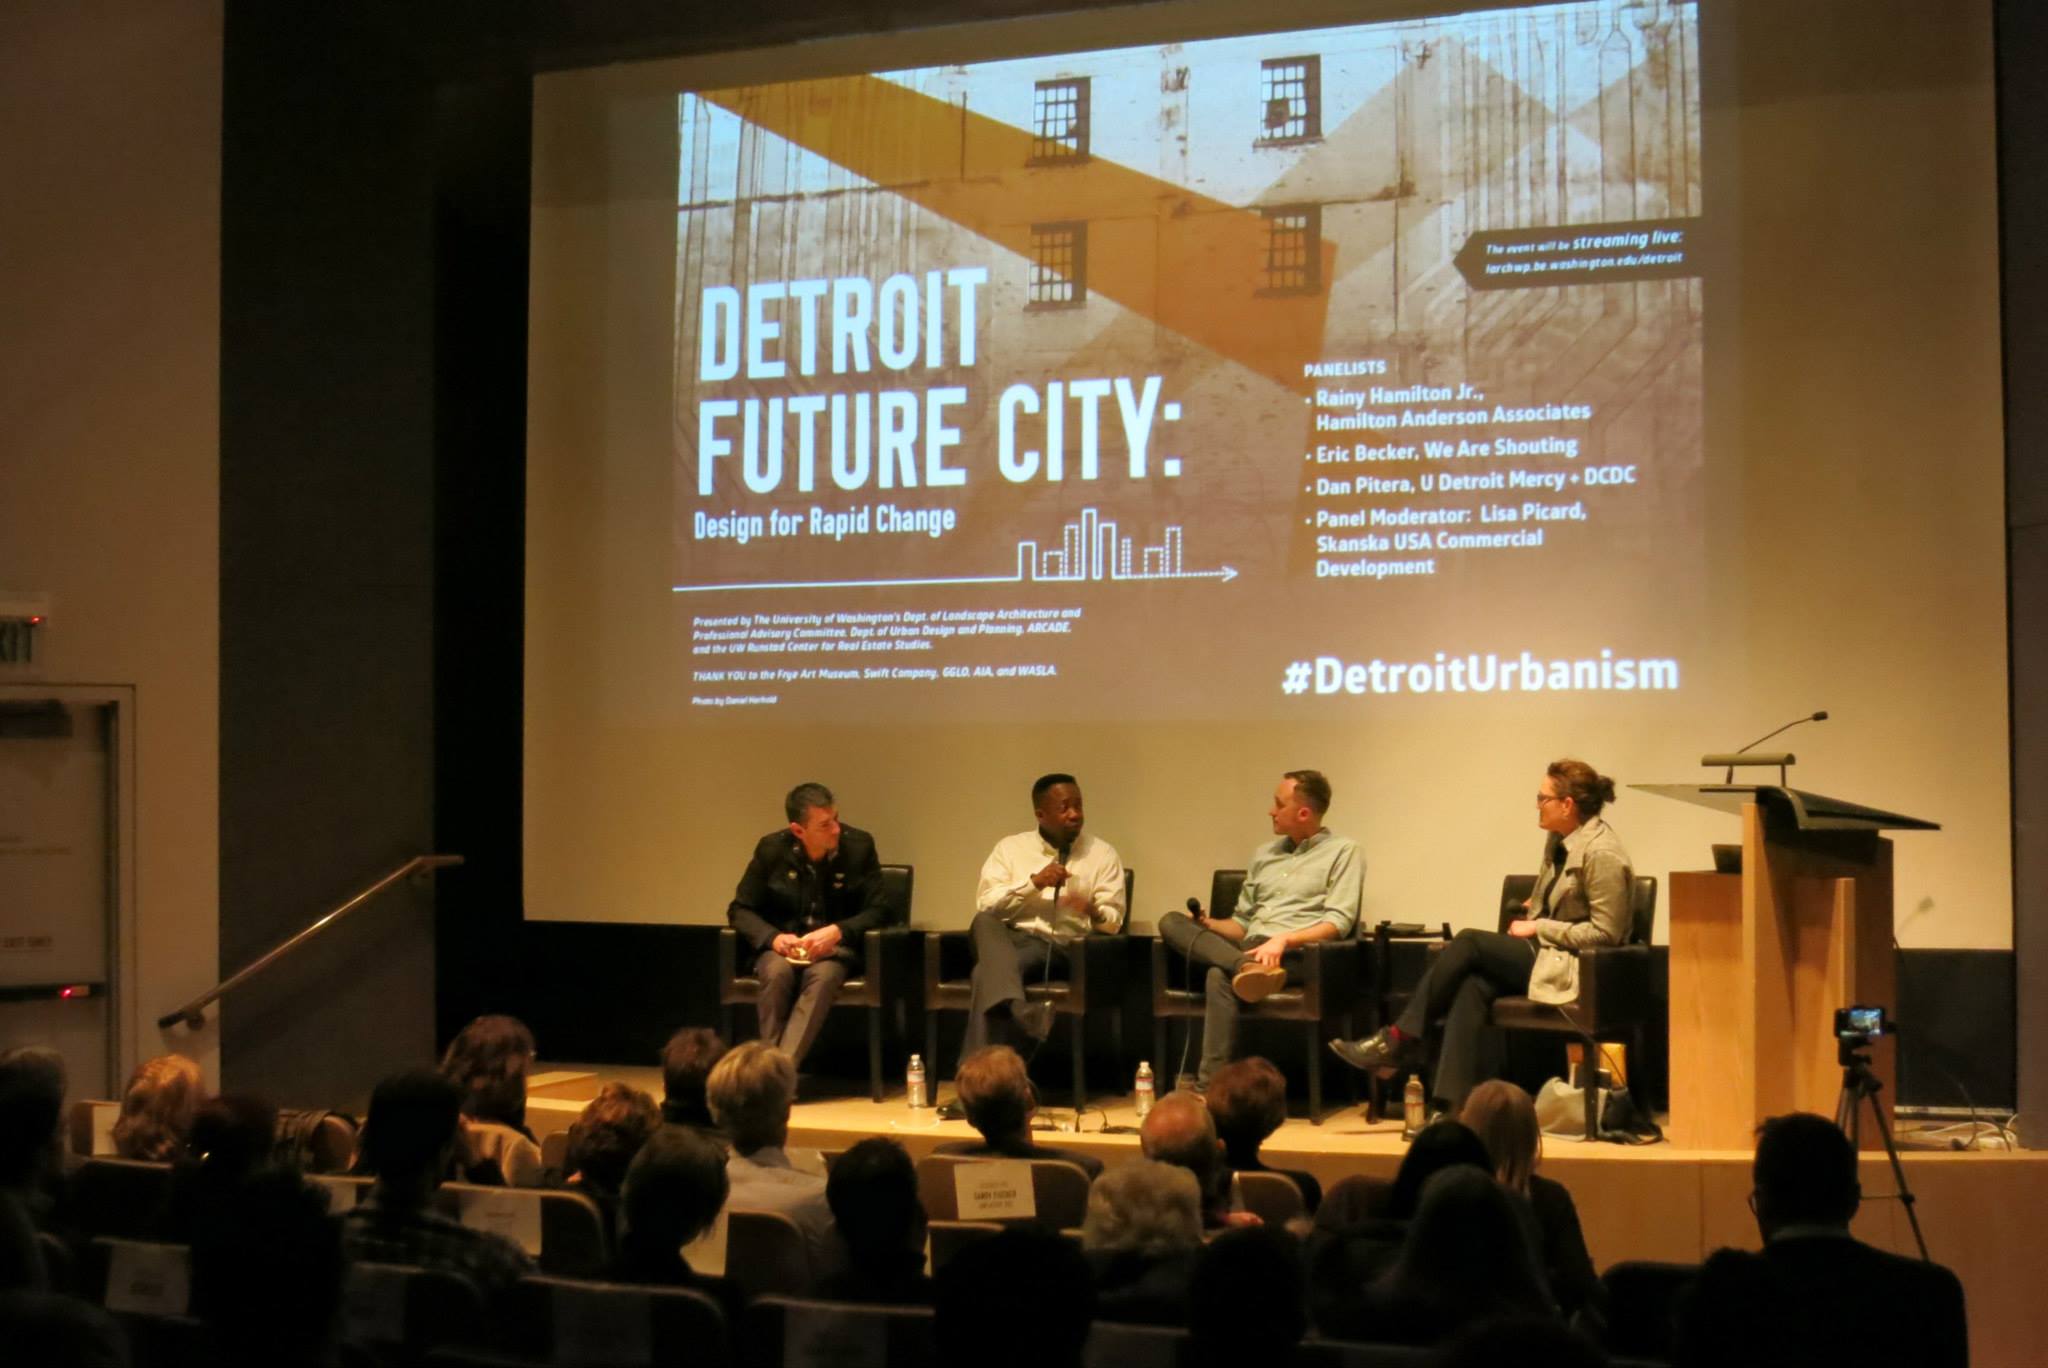 Detroit Future City: Design for Rapid Change